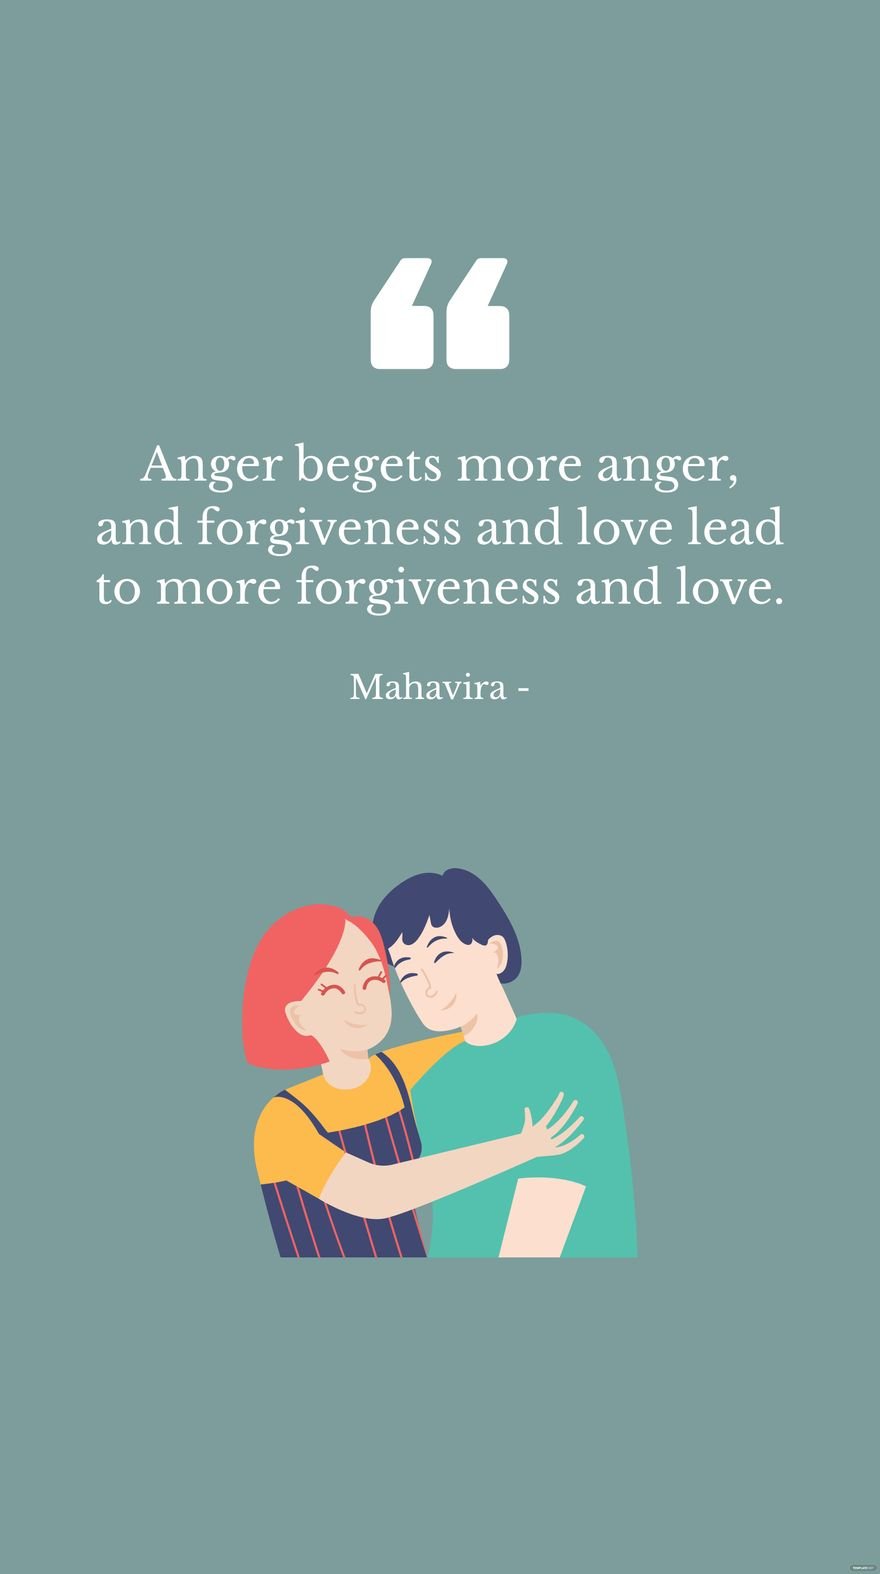 Free Mahavira - Anger begets more anger, and forgiveness and love lead to more forgiveness and love. in JPG